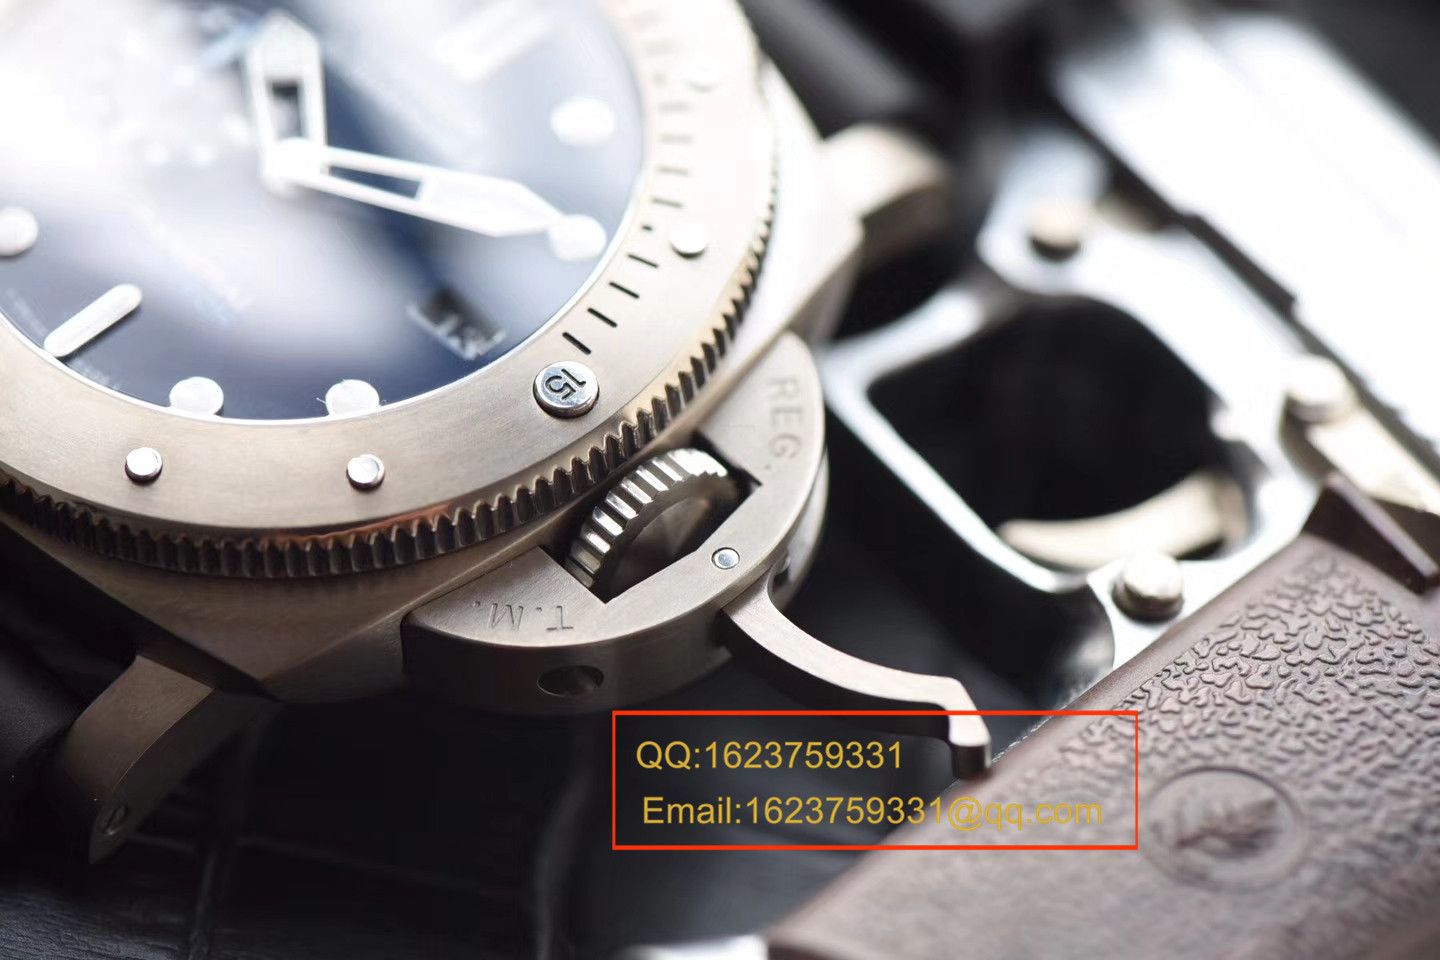 【视频评测XF一比一超A高仿手表】沛纳海LUMINOR 1950系列PAM00692腕表 / XFPAM00692